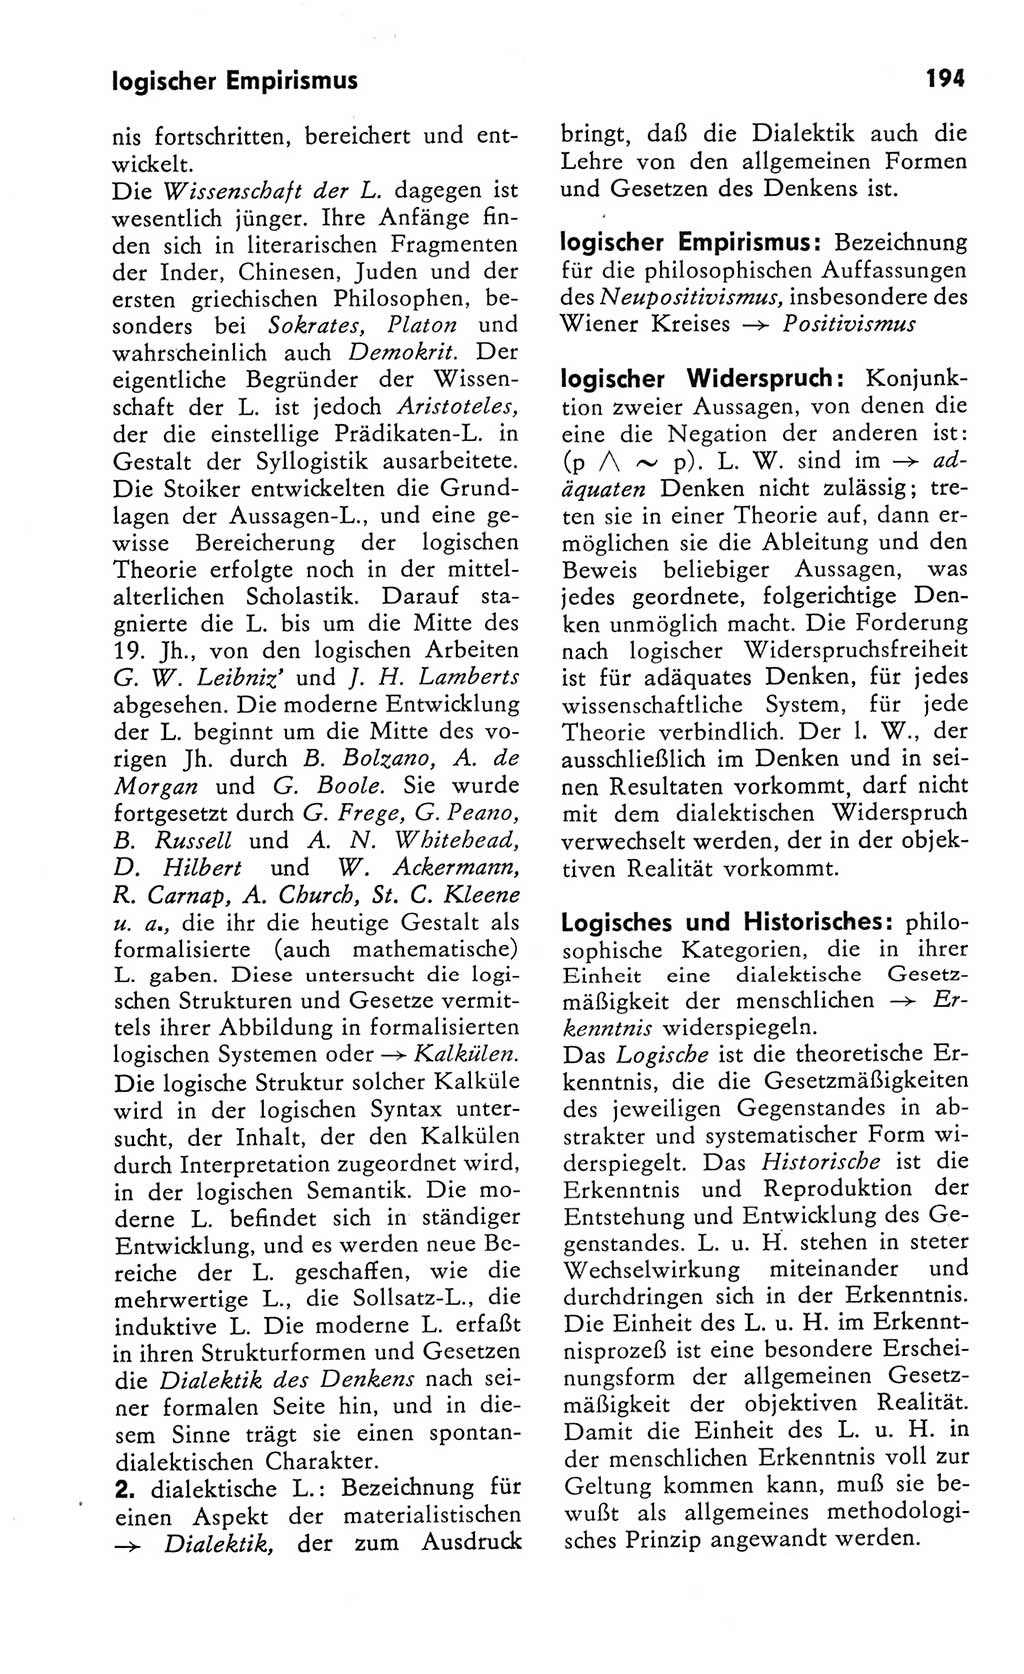 Kleines Wörterbuch der marxistisch-leninistischen Philosophie [Deutsche Demokratische Republik (DDR)] 1982, Seite 194 (Kl. Wb. ML Phil. DDR 1982, S. 194)